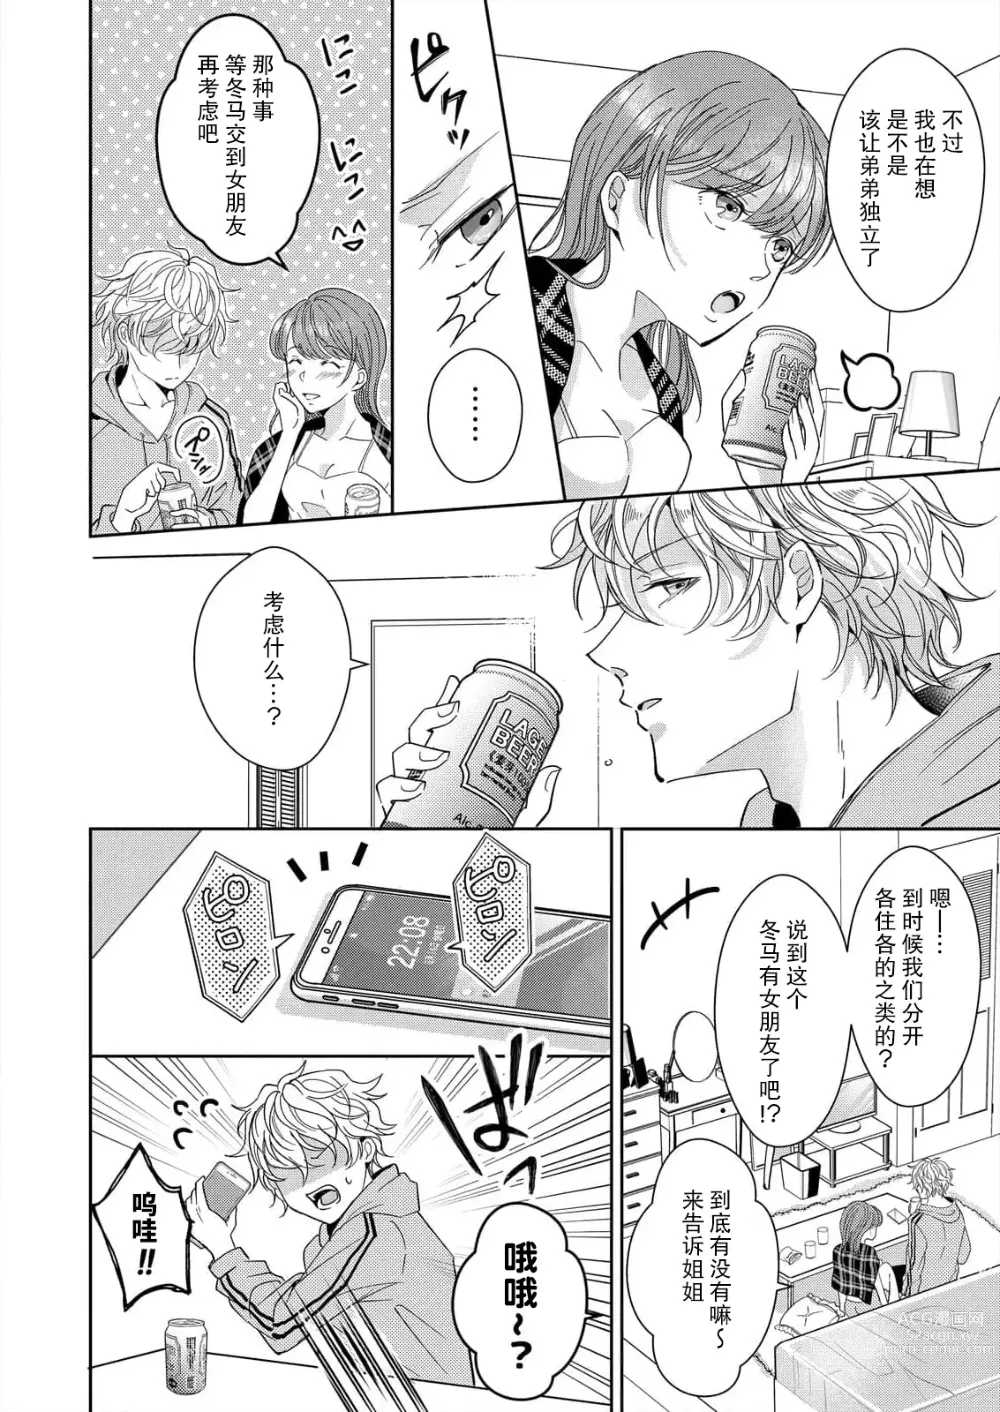 Page 6 of manga 姐弟时间结束~要做一些不能做的事情吗？1